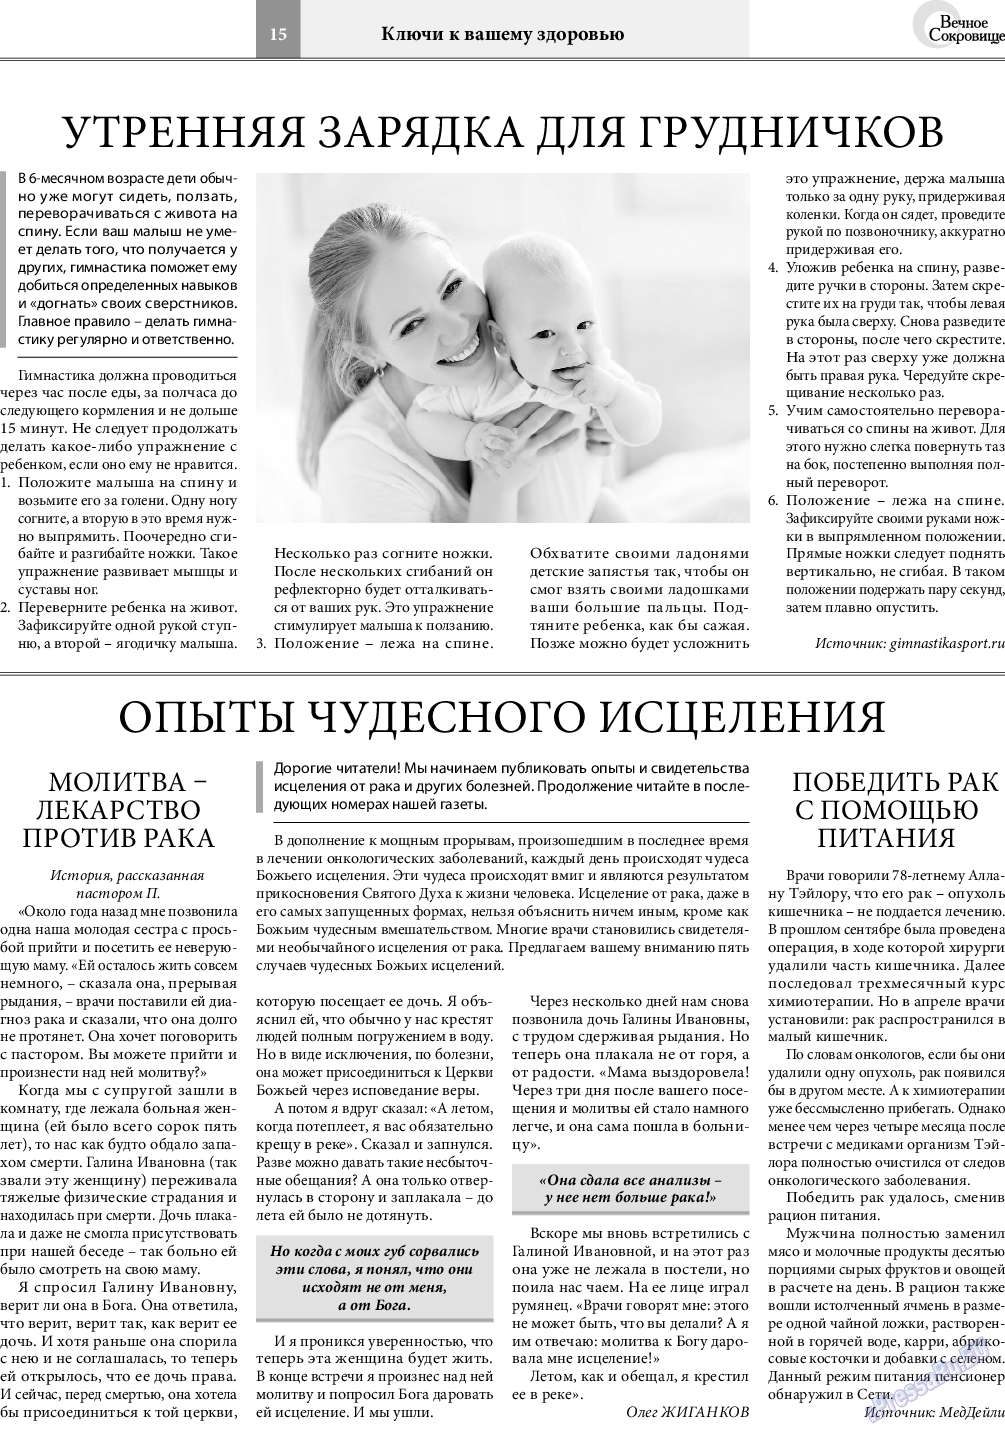 Вечное сокровище, газета. 2019 №2 стр.15